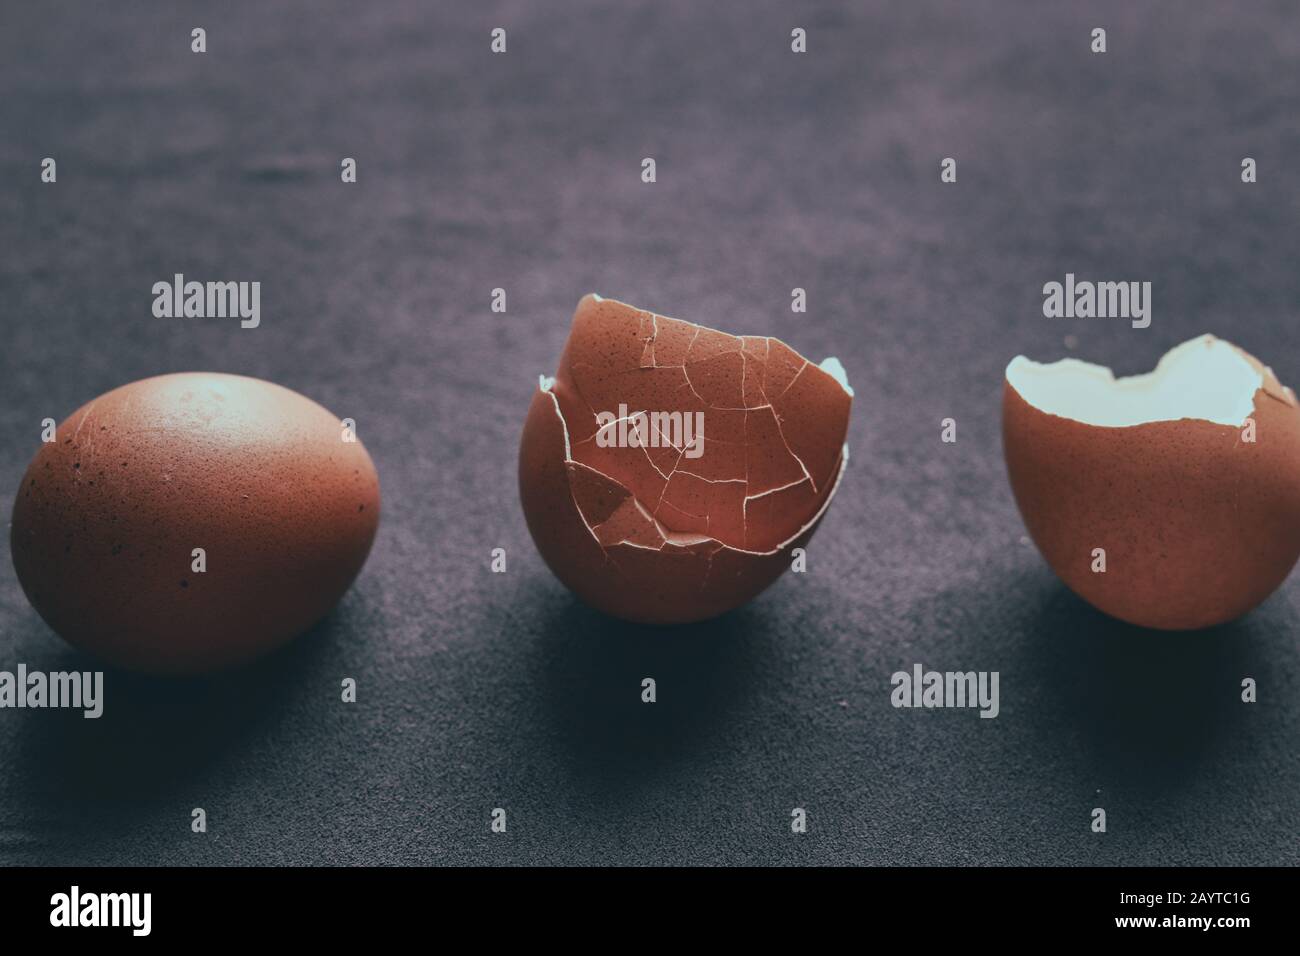 Konzeptfoto mit Ei und zerbrochenen Eierschalen, um das Konzept des Lebens, der psychischen Krankheit und der Identitätskrise zu zeigen Stockfoto